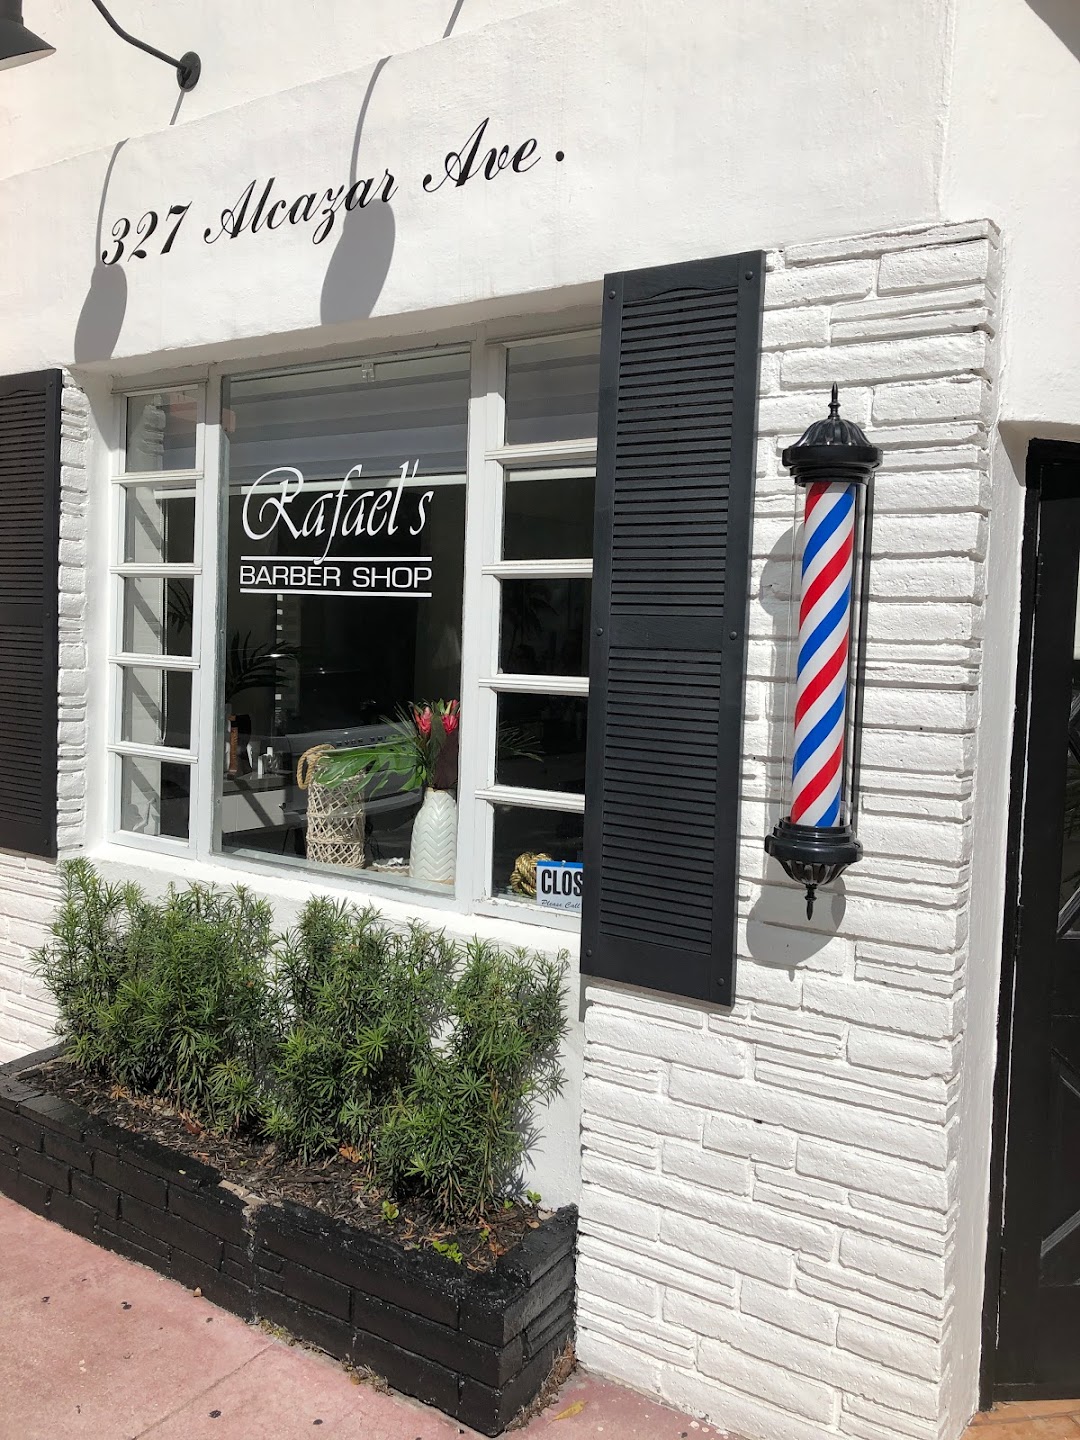 Rafaels Barber Shop